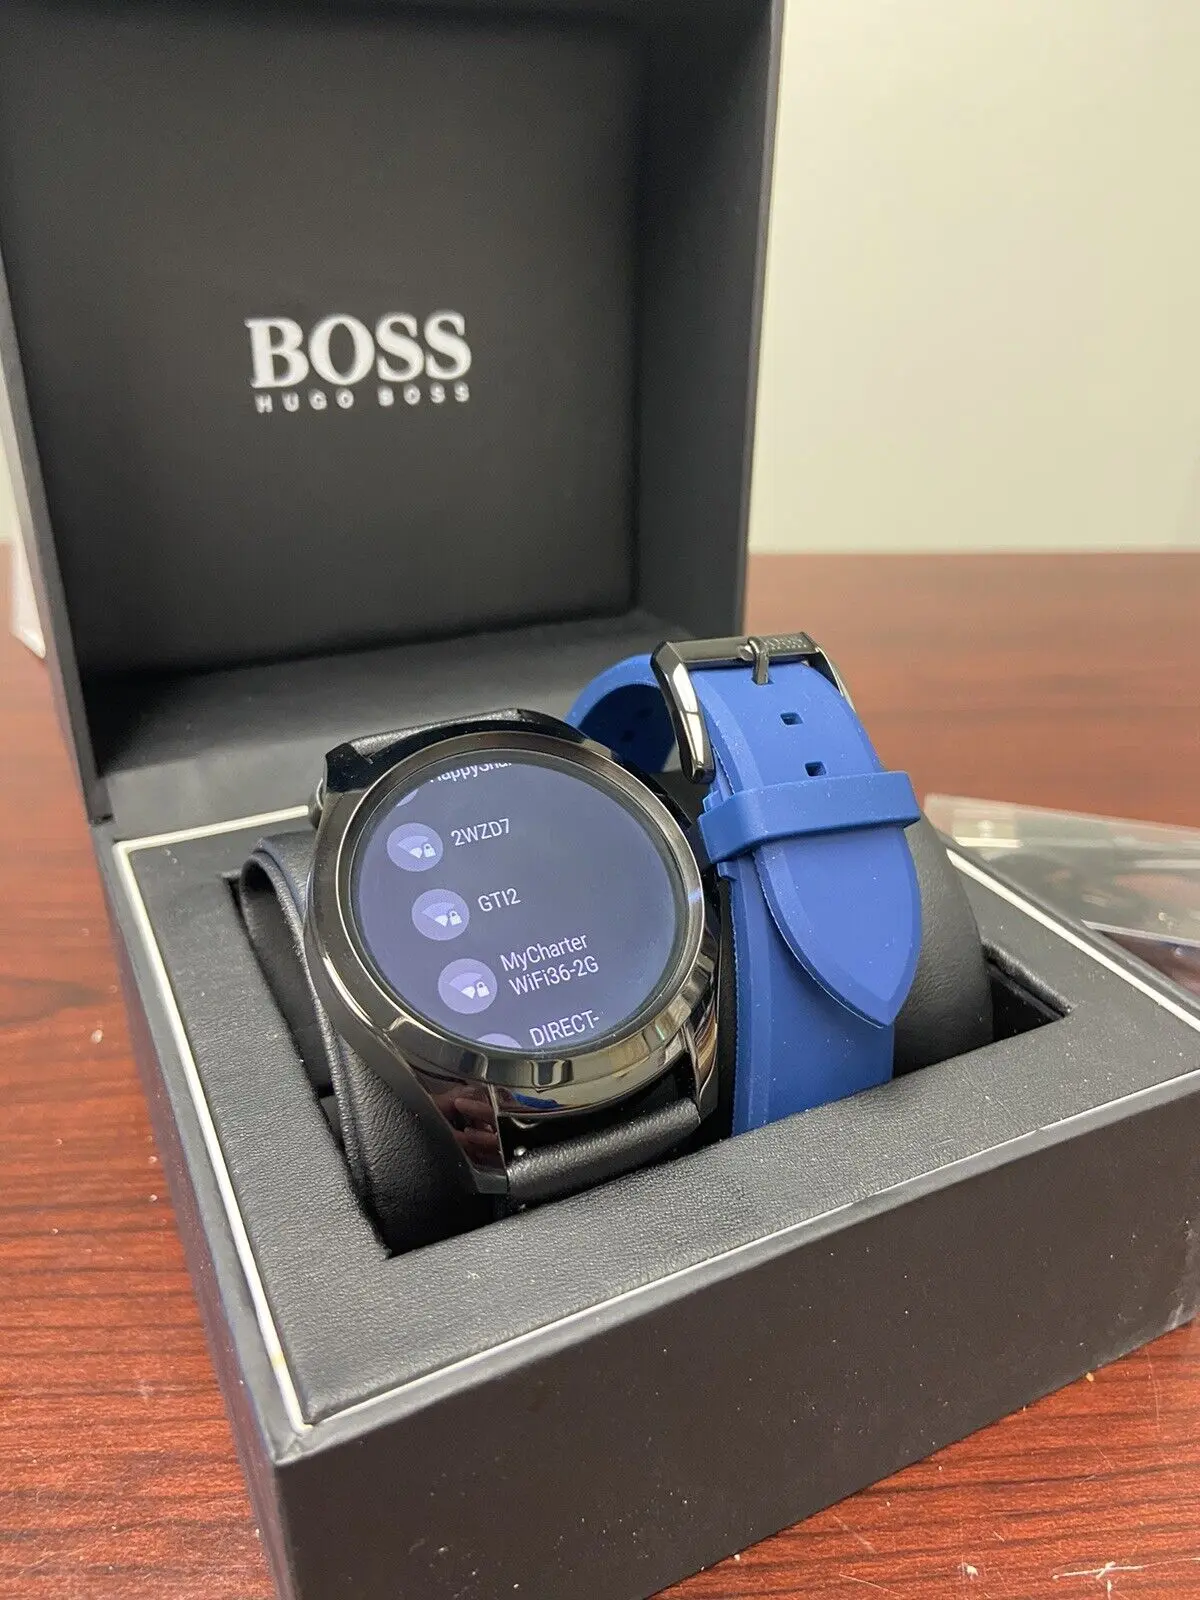 reloj inteligente hugo boss - Hugo Boss fabrica relojes inteligentes